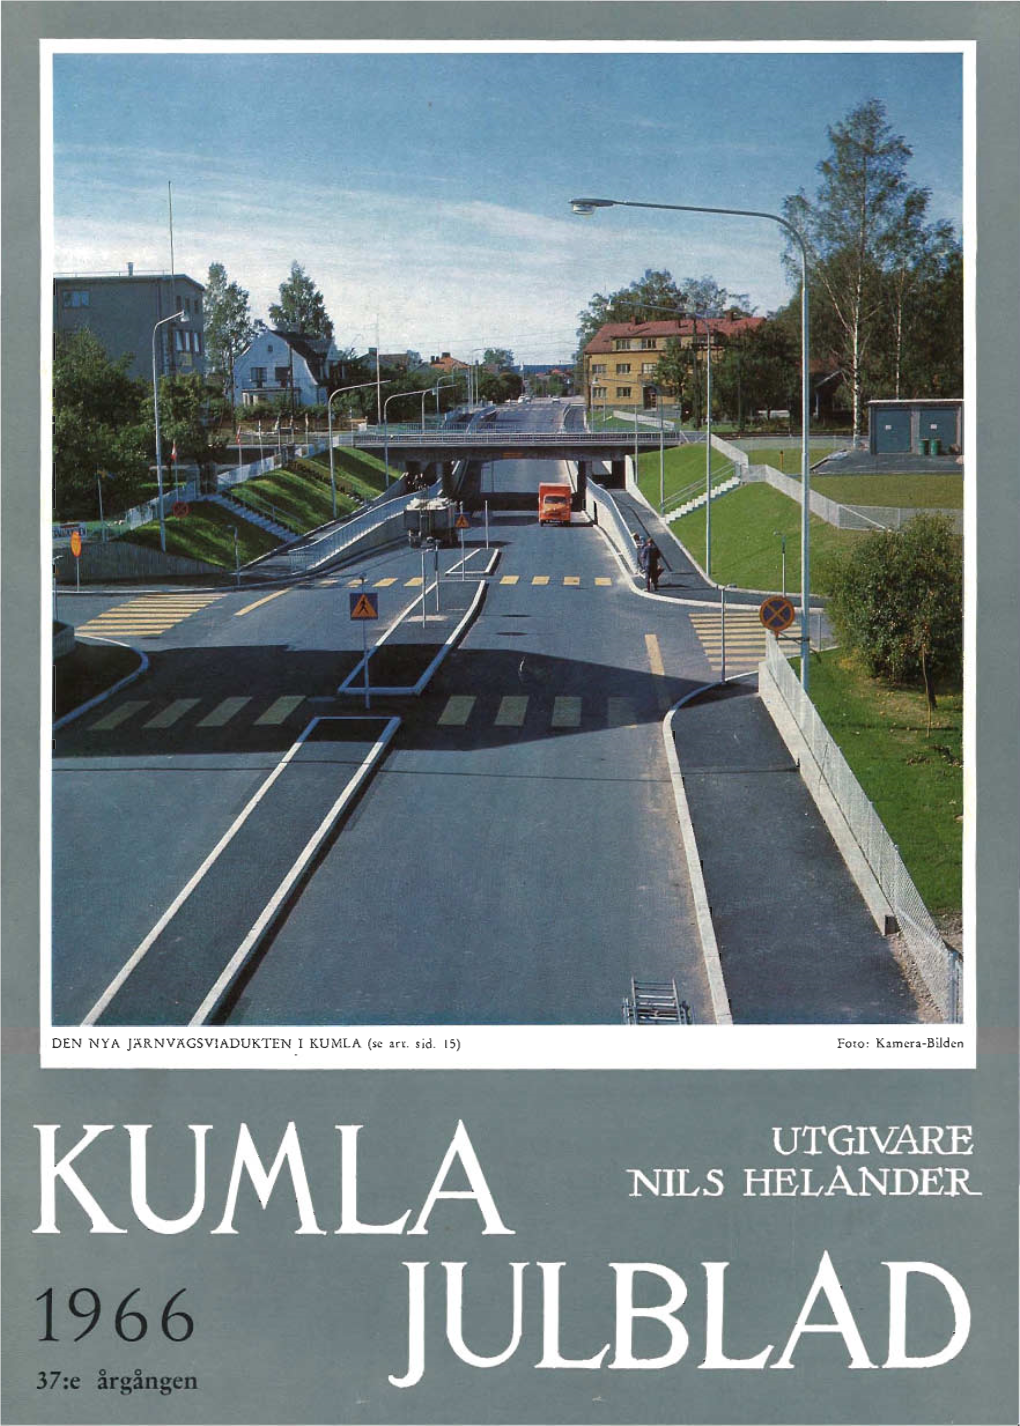 Kumla Julblad 1966